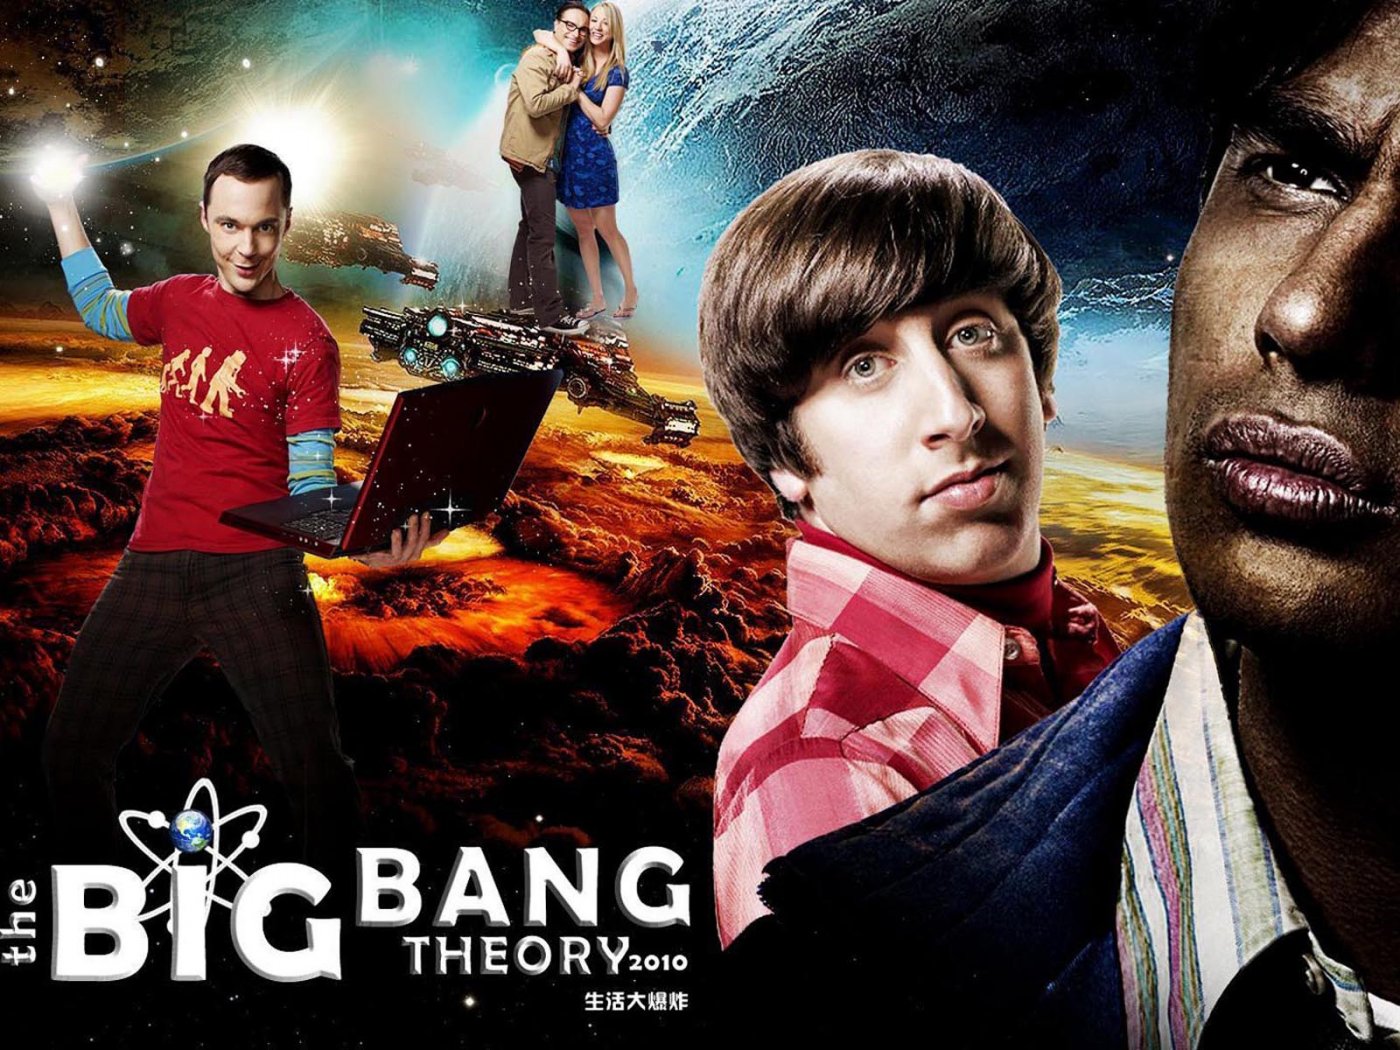 The Big Bang Theory Wallpaper 1400x1050 Wallpapers, 1400x1050 ...